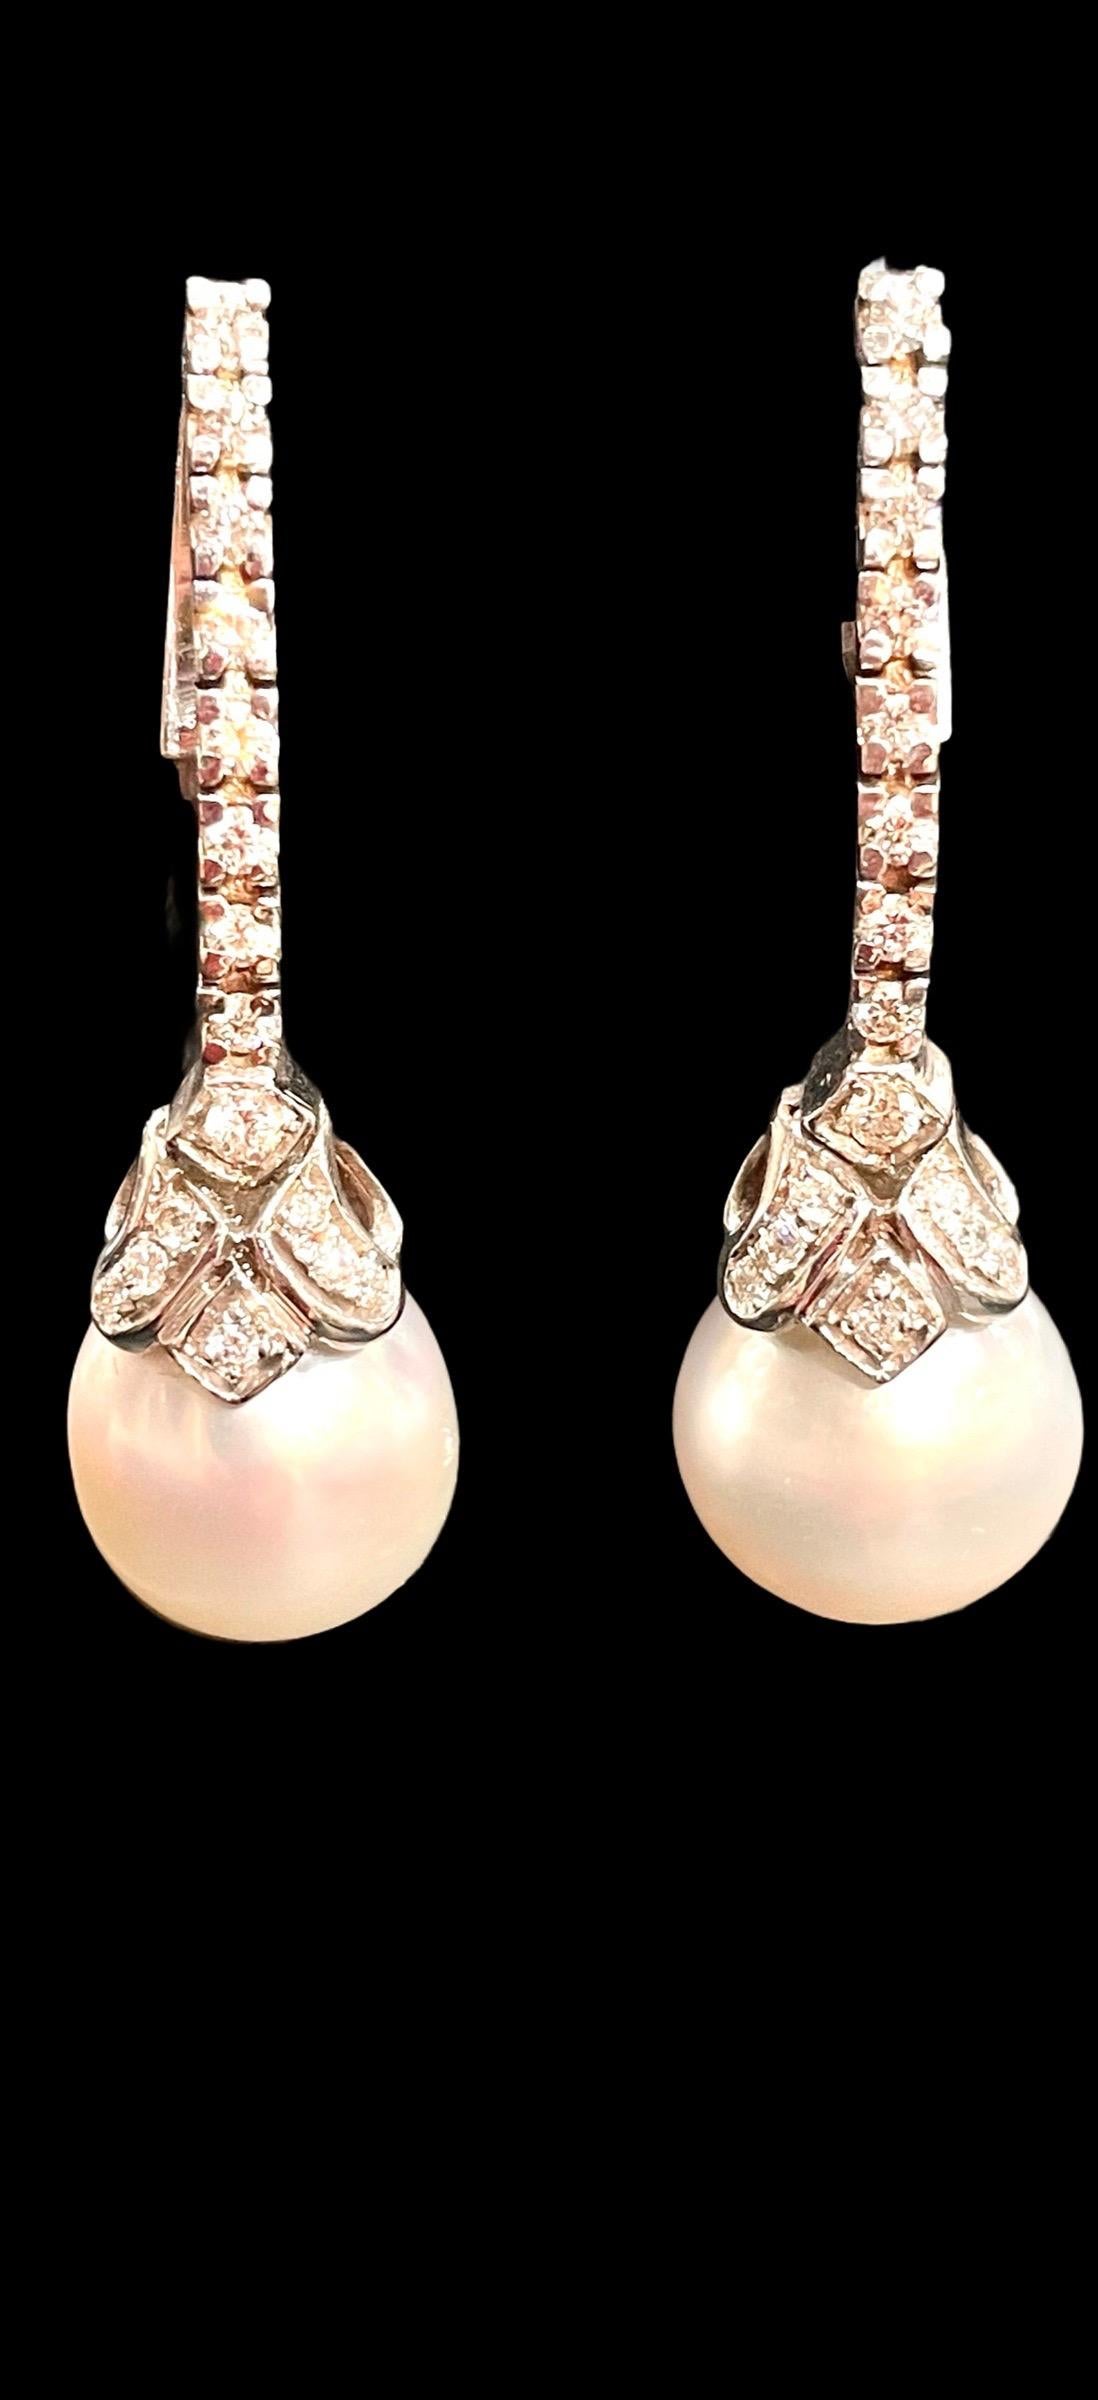 HK Fine Estate Jewels freut sich, diese atemberaubenden französischen Perlenanhänger-Ohrringe zu präsentieren. Jeder Ohrring ist mit einer weißen Zuchtperle mit exzellentem Glanz und einem Diamanten im Brillantschliff besetzt und hat einen